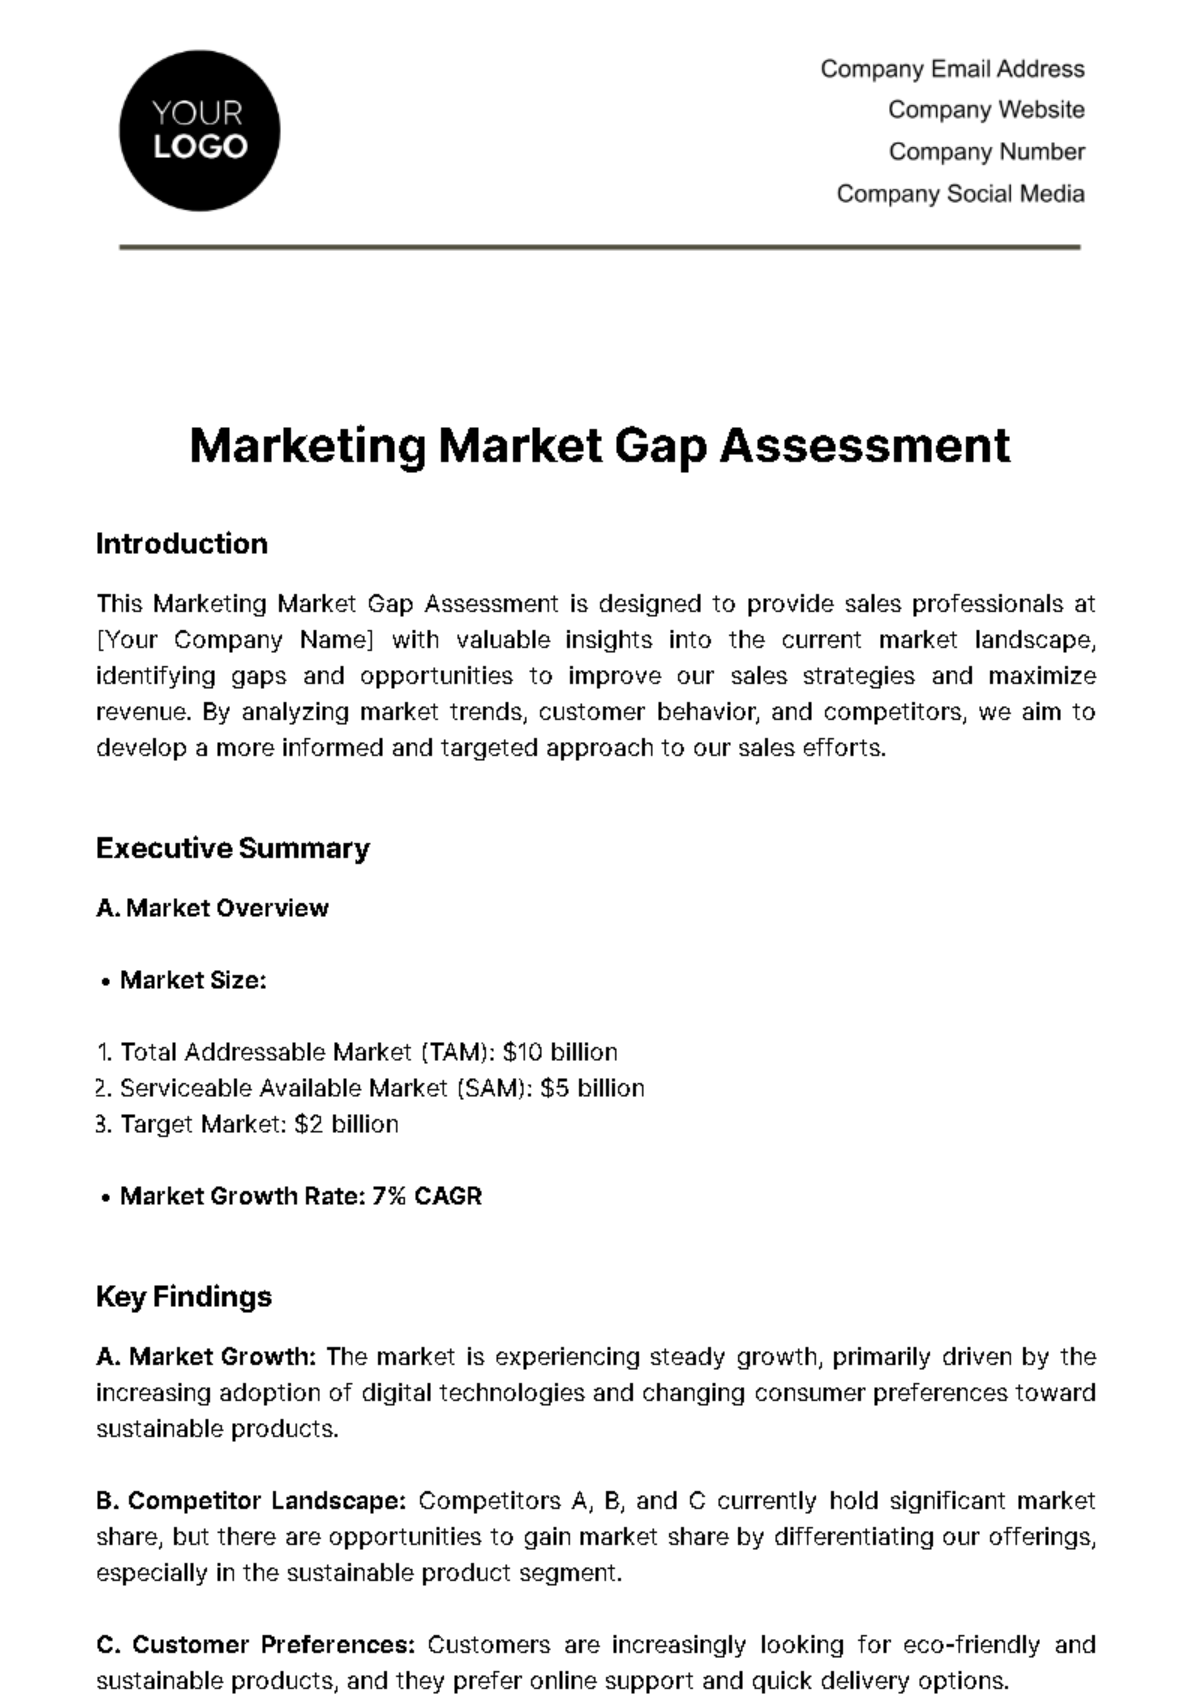 Marketing Market Gap Assessment Template